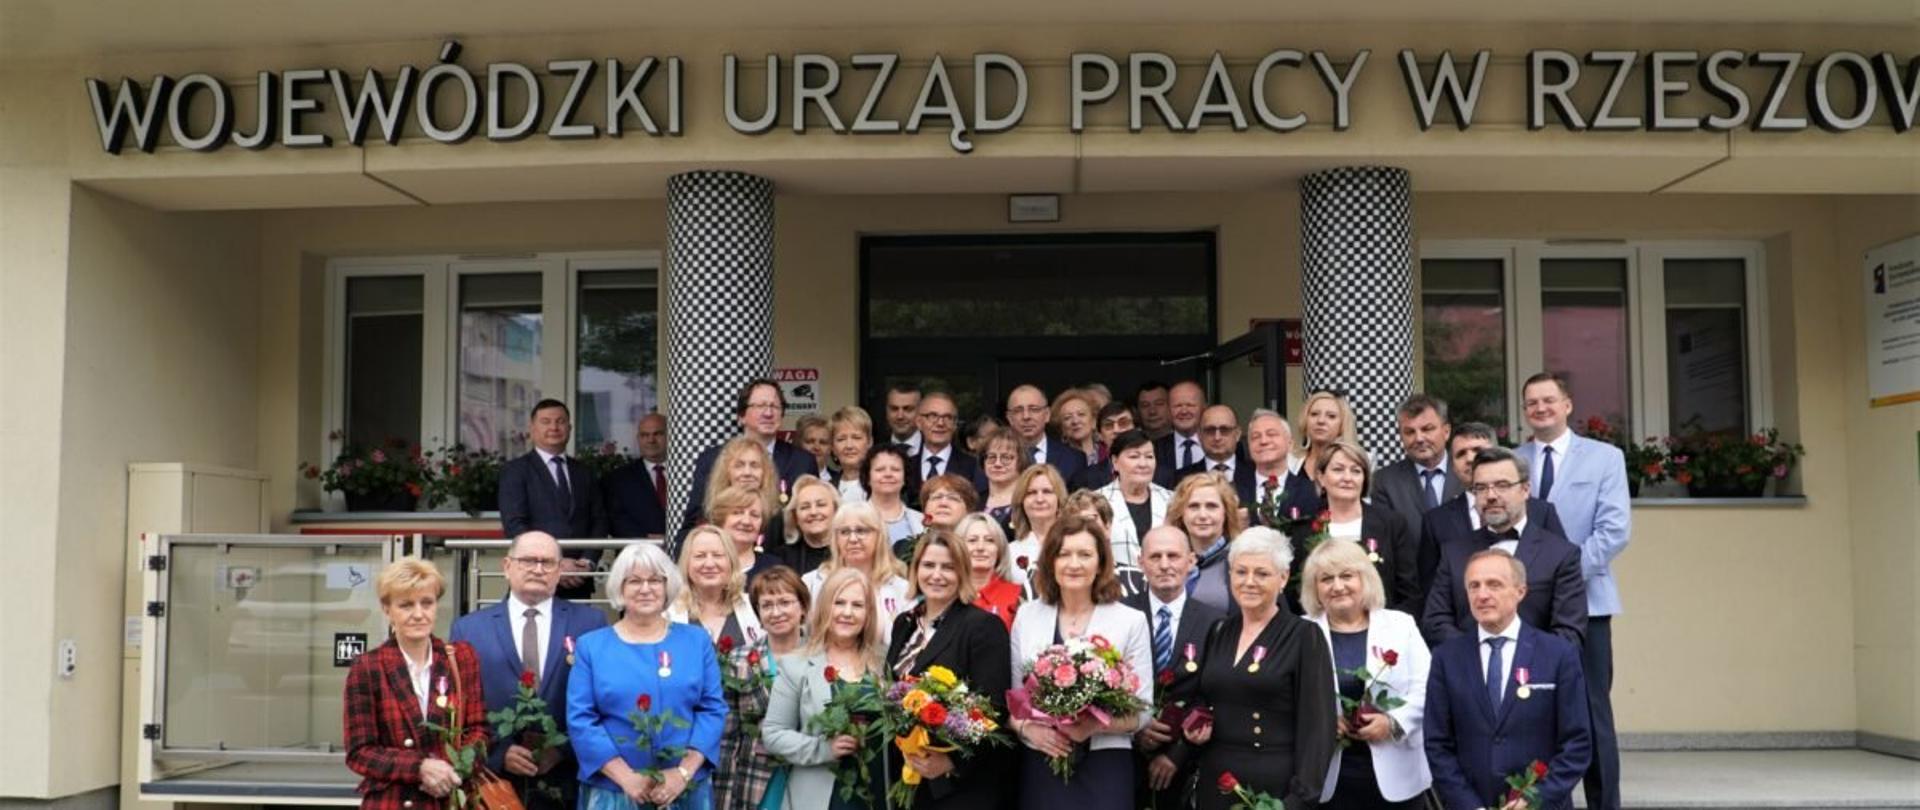 Wojewoda podkarpacki Ewa Leniart z grupą odznaczonych pracowników urzędów pracy przed budynkiem Wojewódzkiego Urzędu Pracy w Rzeszowie 